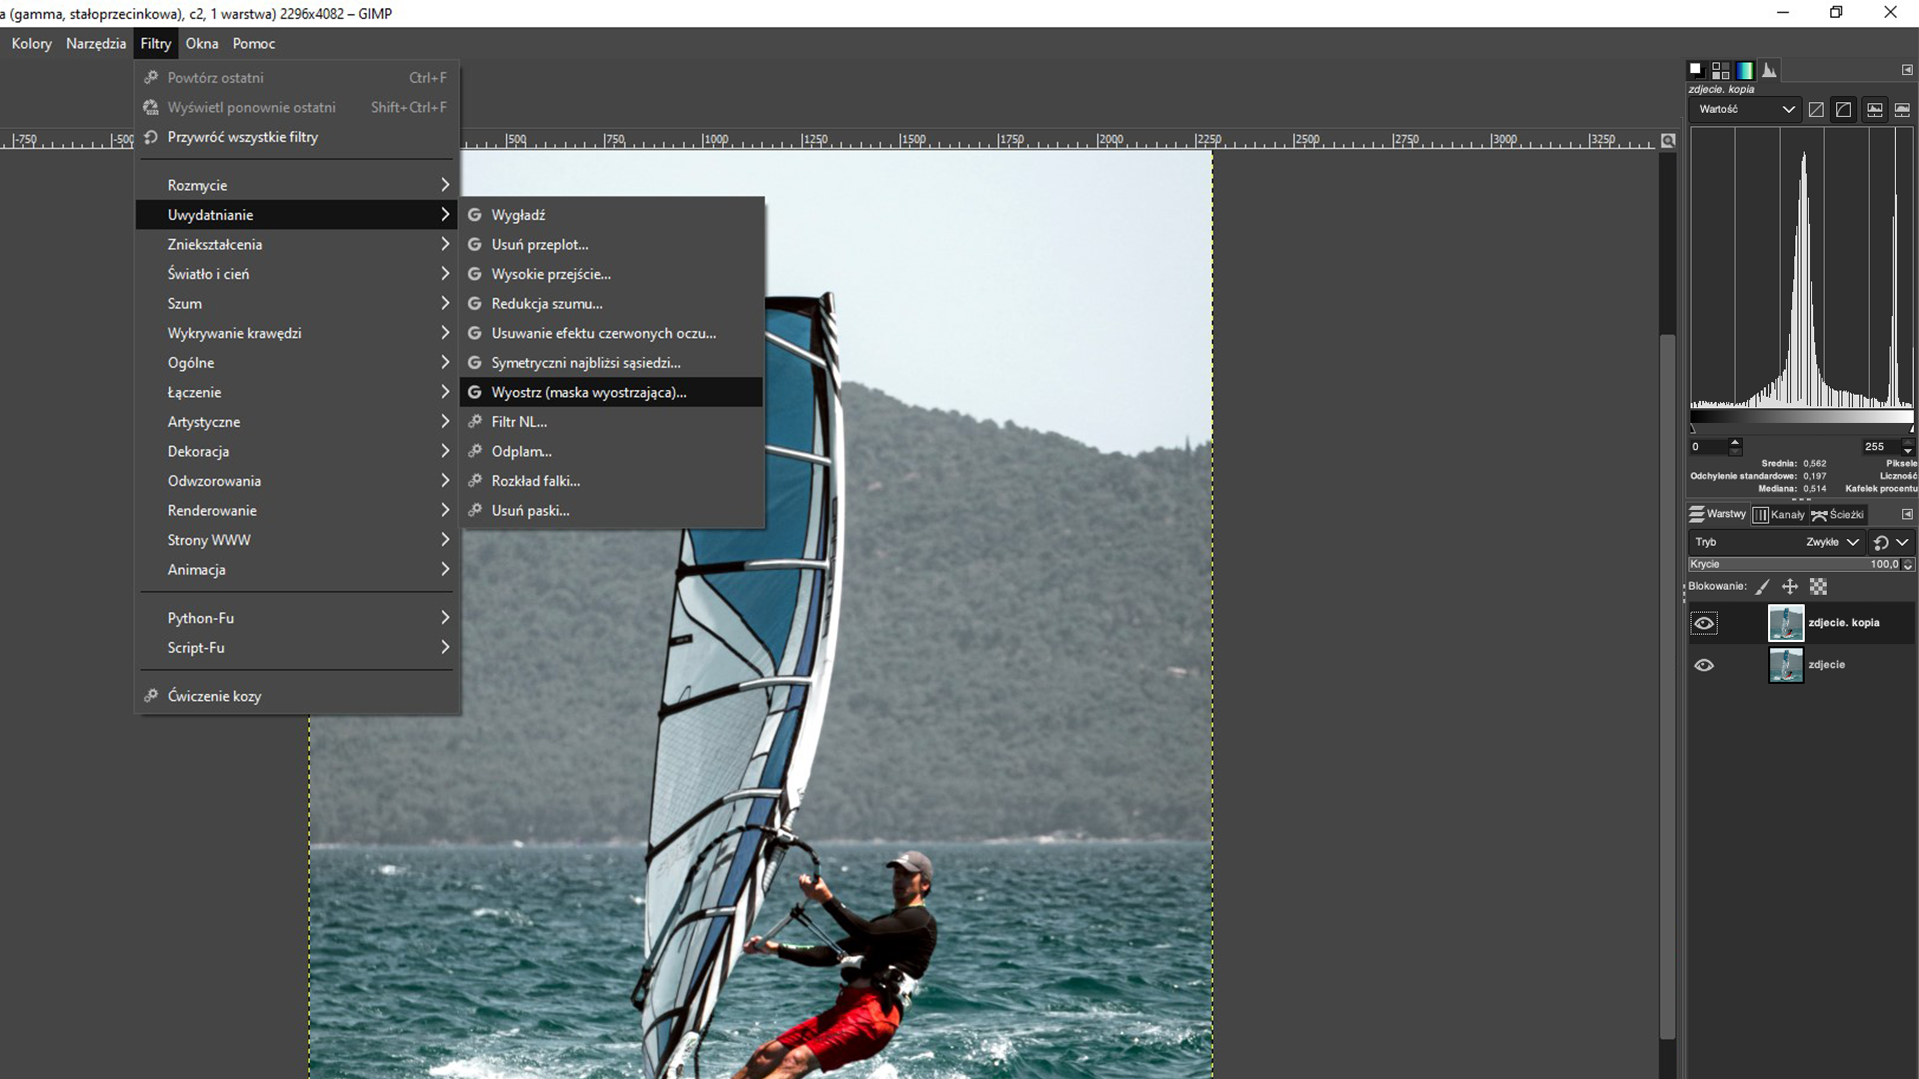 Ilustracja przedstawia okno programu. W obszarze roboczym jest zdjęcie mężczyzny na windsurfingu. Z menu wybrano zakładkę Filtry. Z listy wybrano Uwydatnianie, a następnie Wyostrz (maska wyostrzająca). Po prawej stronie jest panel dotyczący warstw. 